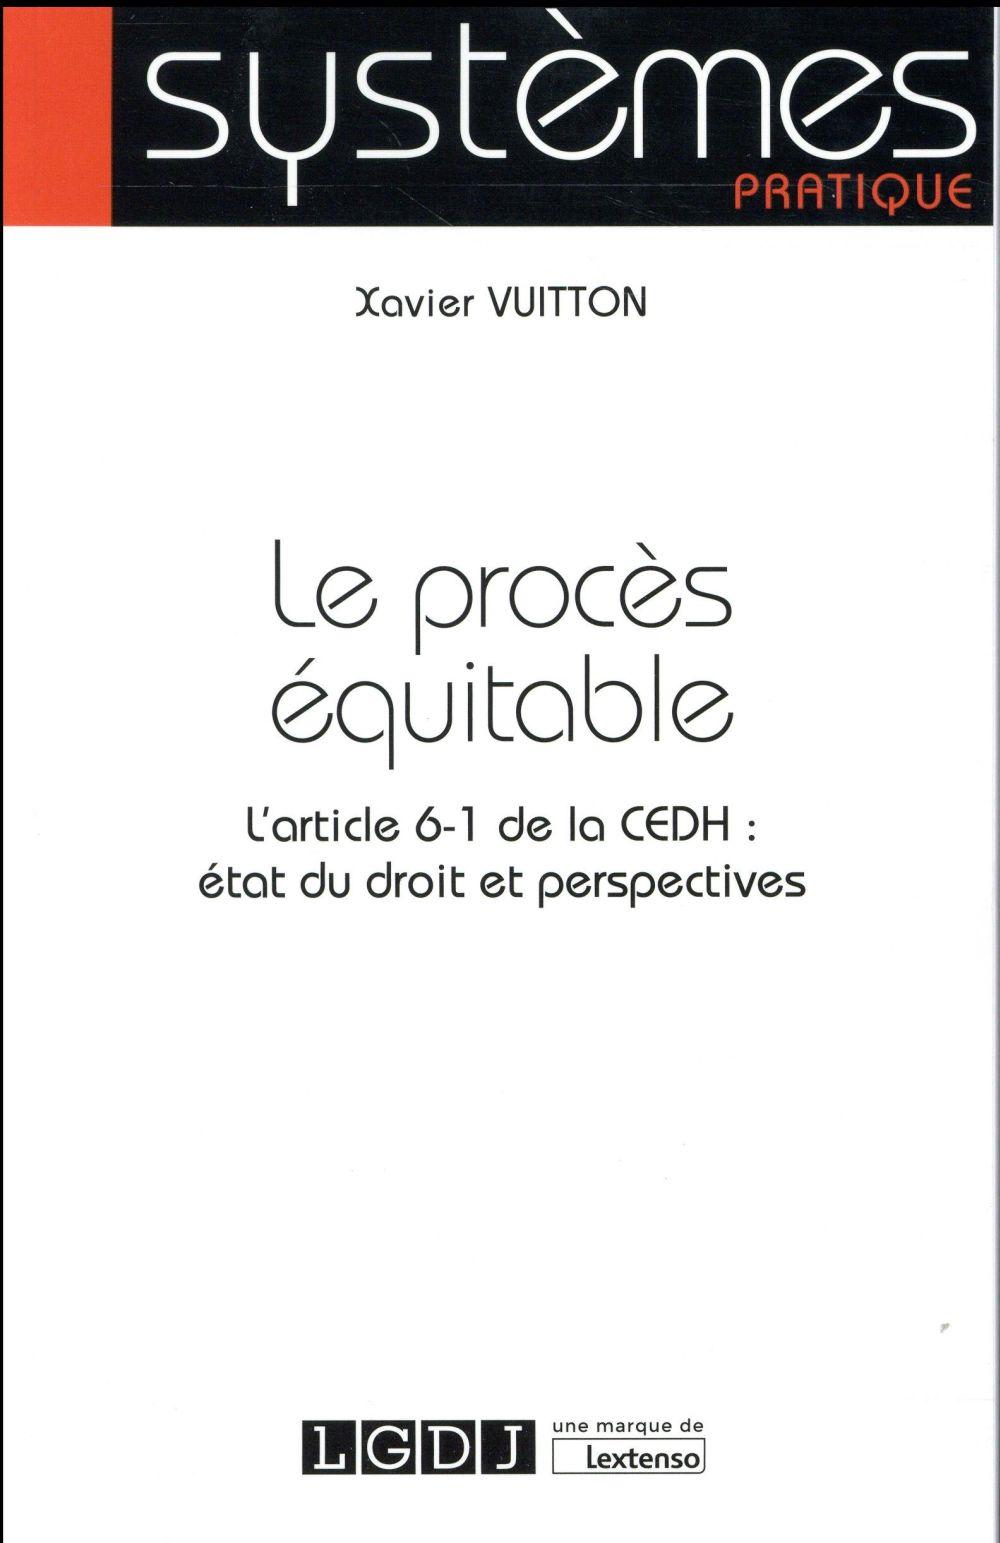 Vente Livre :                                    Le procès équitable ; l'article 6-1 de la CEDH : état du droit et perspectives
- Xavier Vuitton                                     